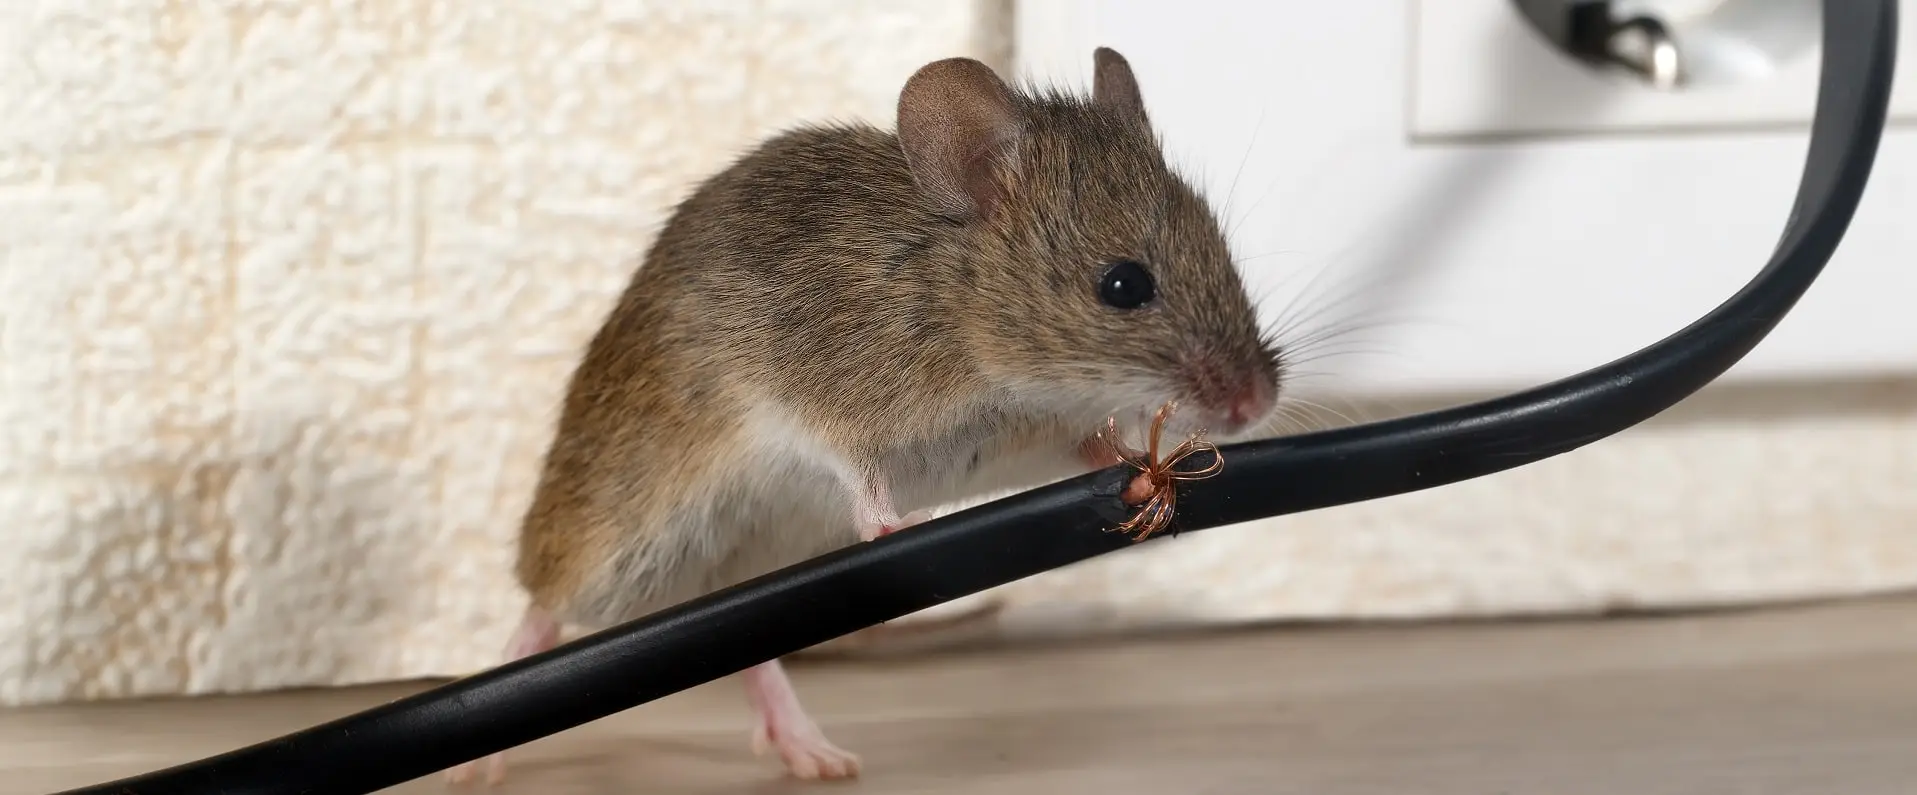 Mice Control Ottawa